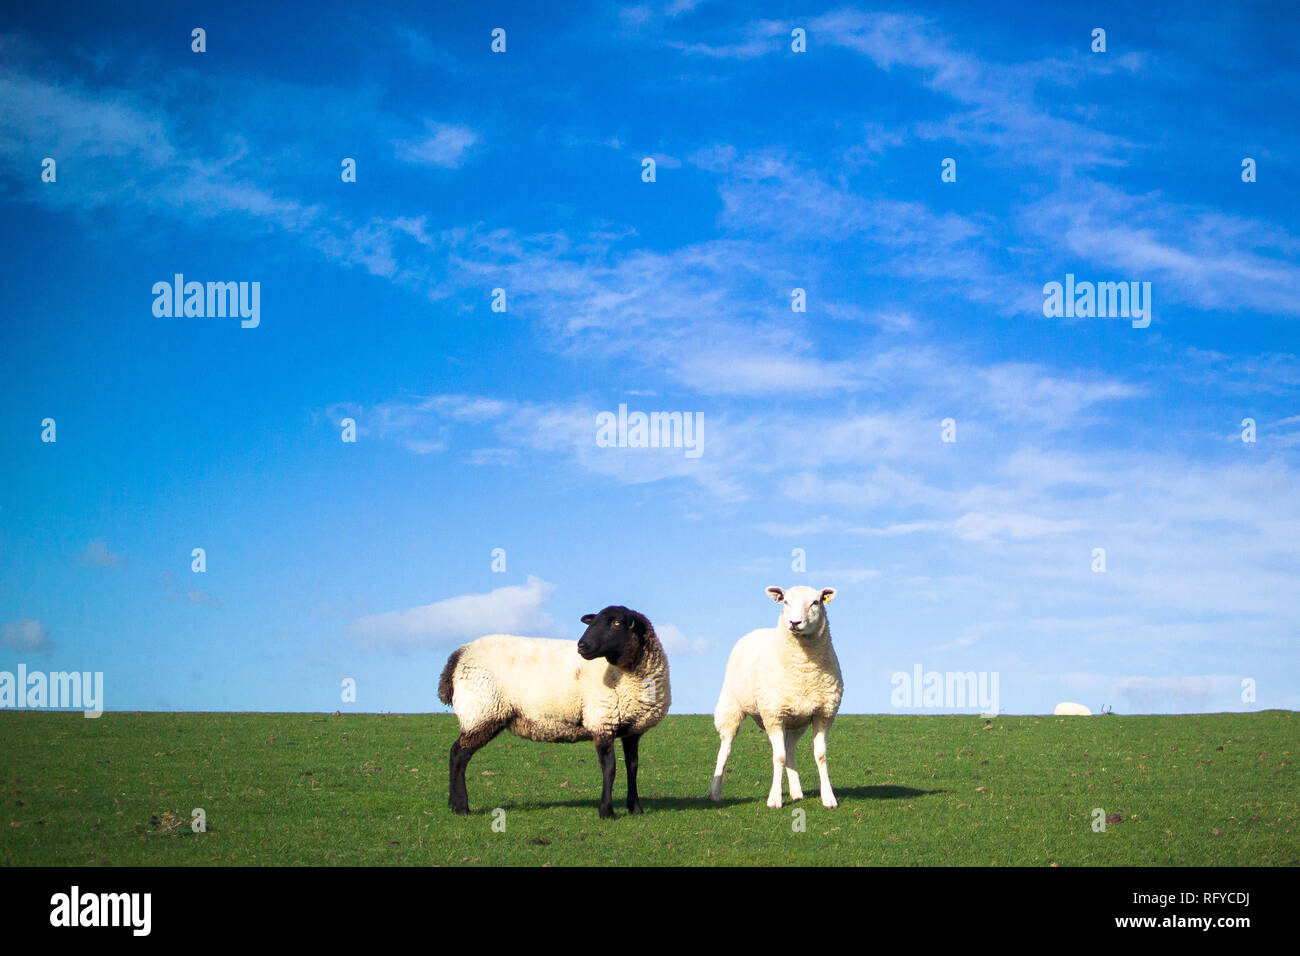 Deux moutons, une avec la face noire et les jambes, l'autre avec un visage blanc et les jambes sur le monticule herbeux journée ensoleillée. Beaucoup de ciel bleu. Banque D'Images